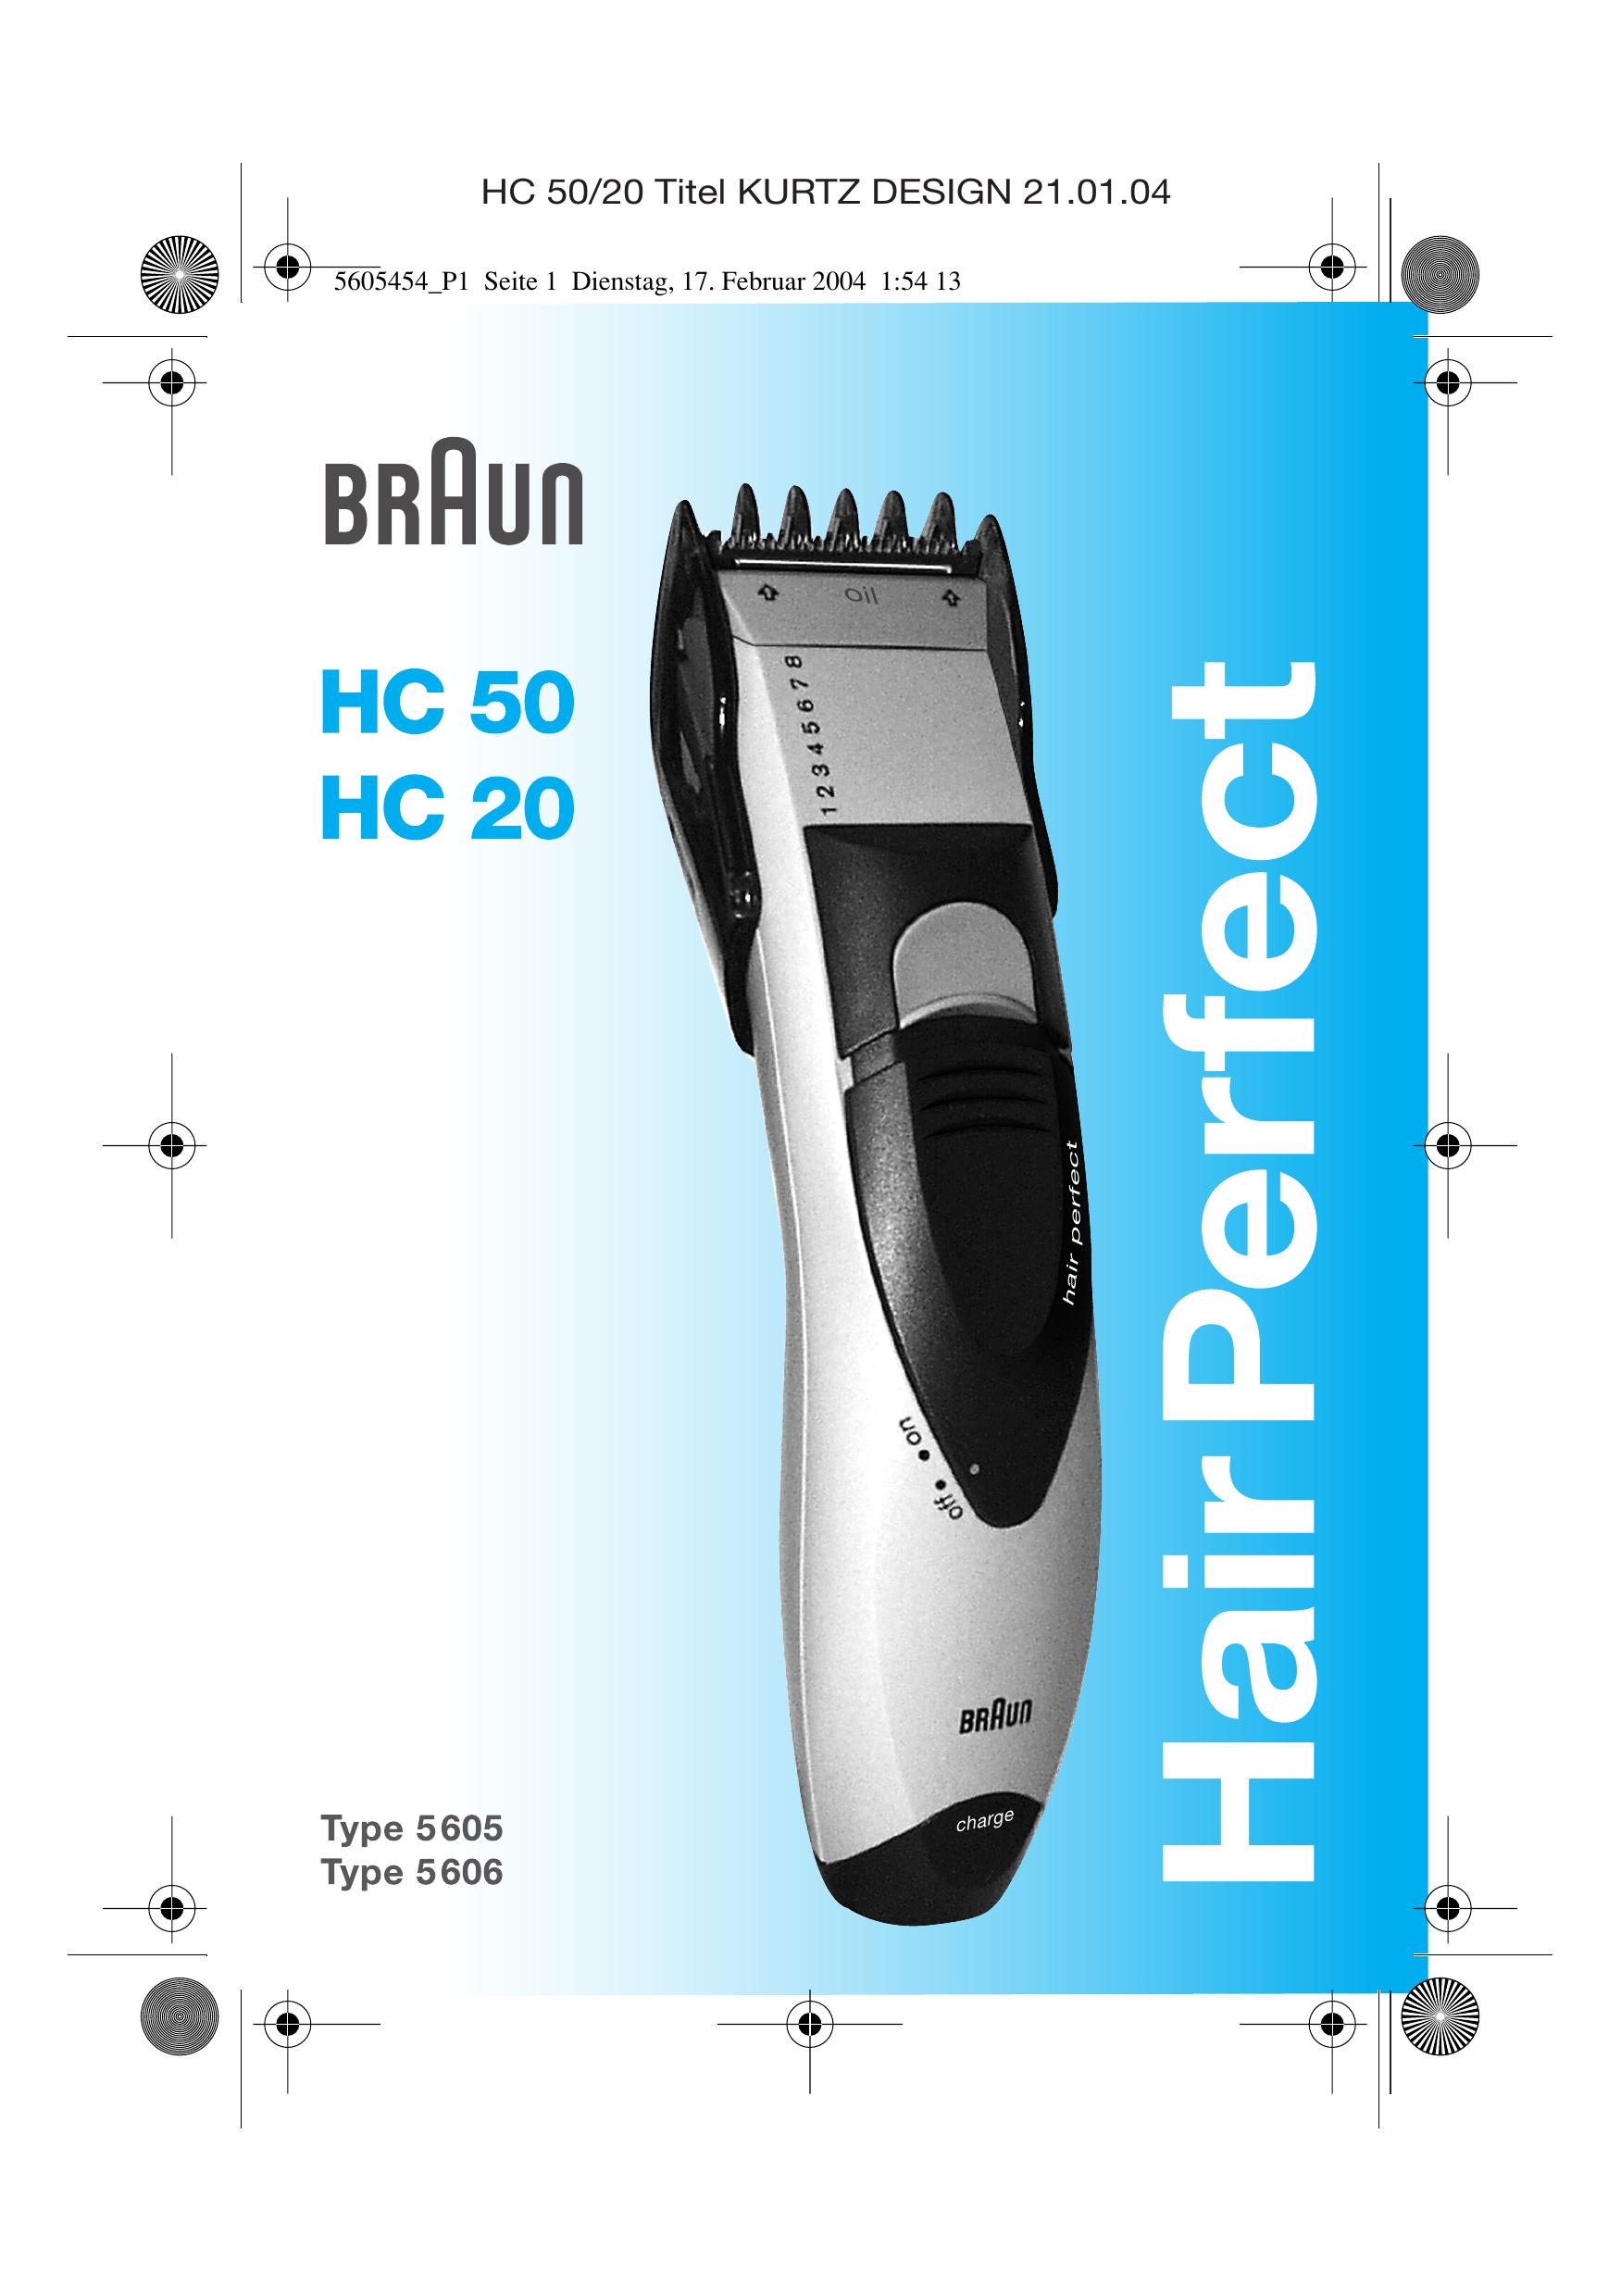 Braun HC 50 Hair Clippers User Manual